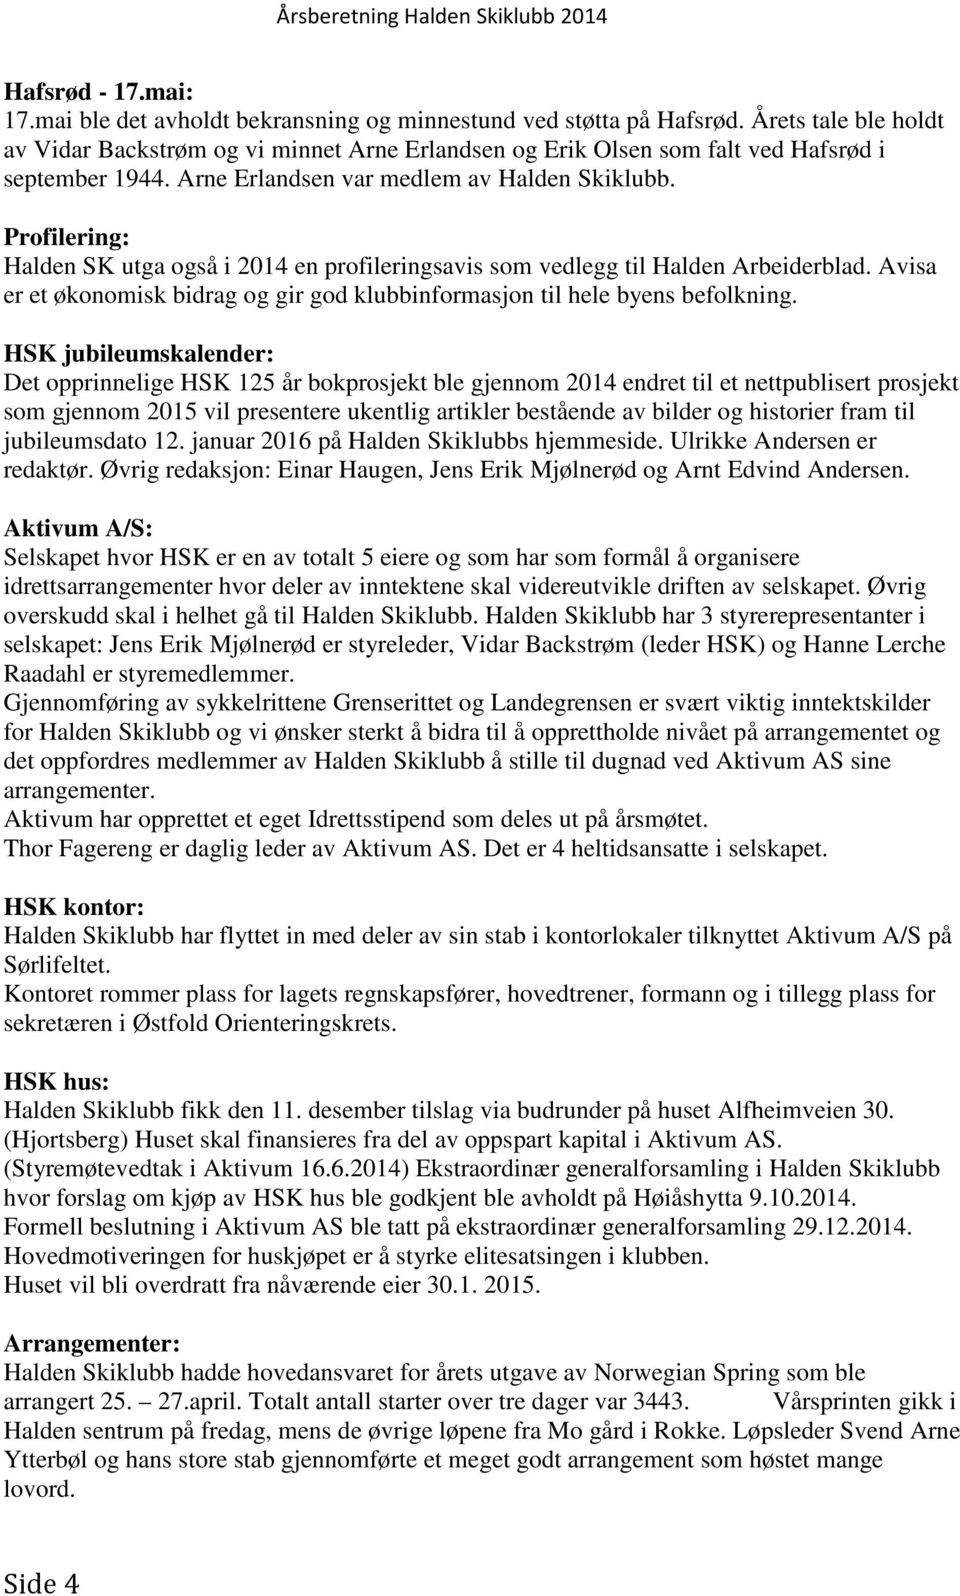 Profilering: Halden SK utga også i 2014 en profileringsavis som vedlegg til Halden Arbeiderblad. Avisa er et økonomisk bidrag og gir god klubbinformasjon til hele byens befolkning.